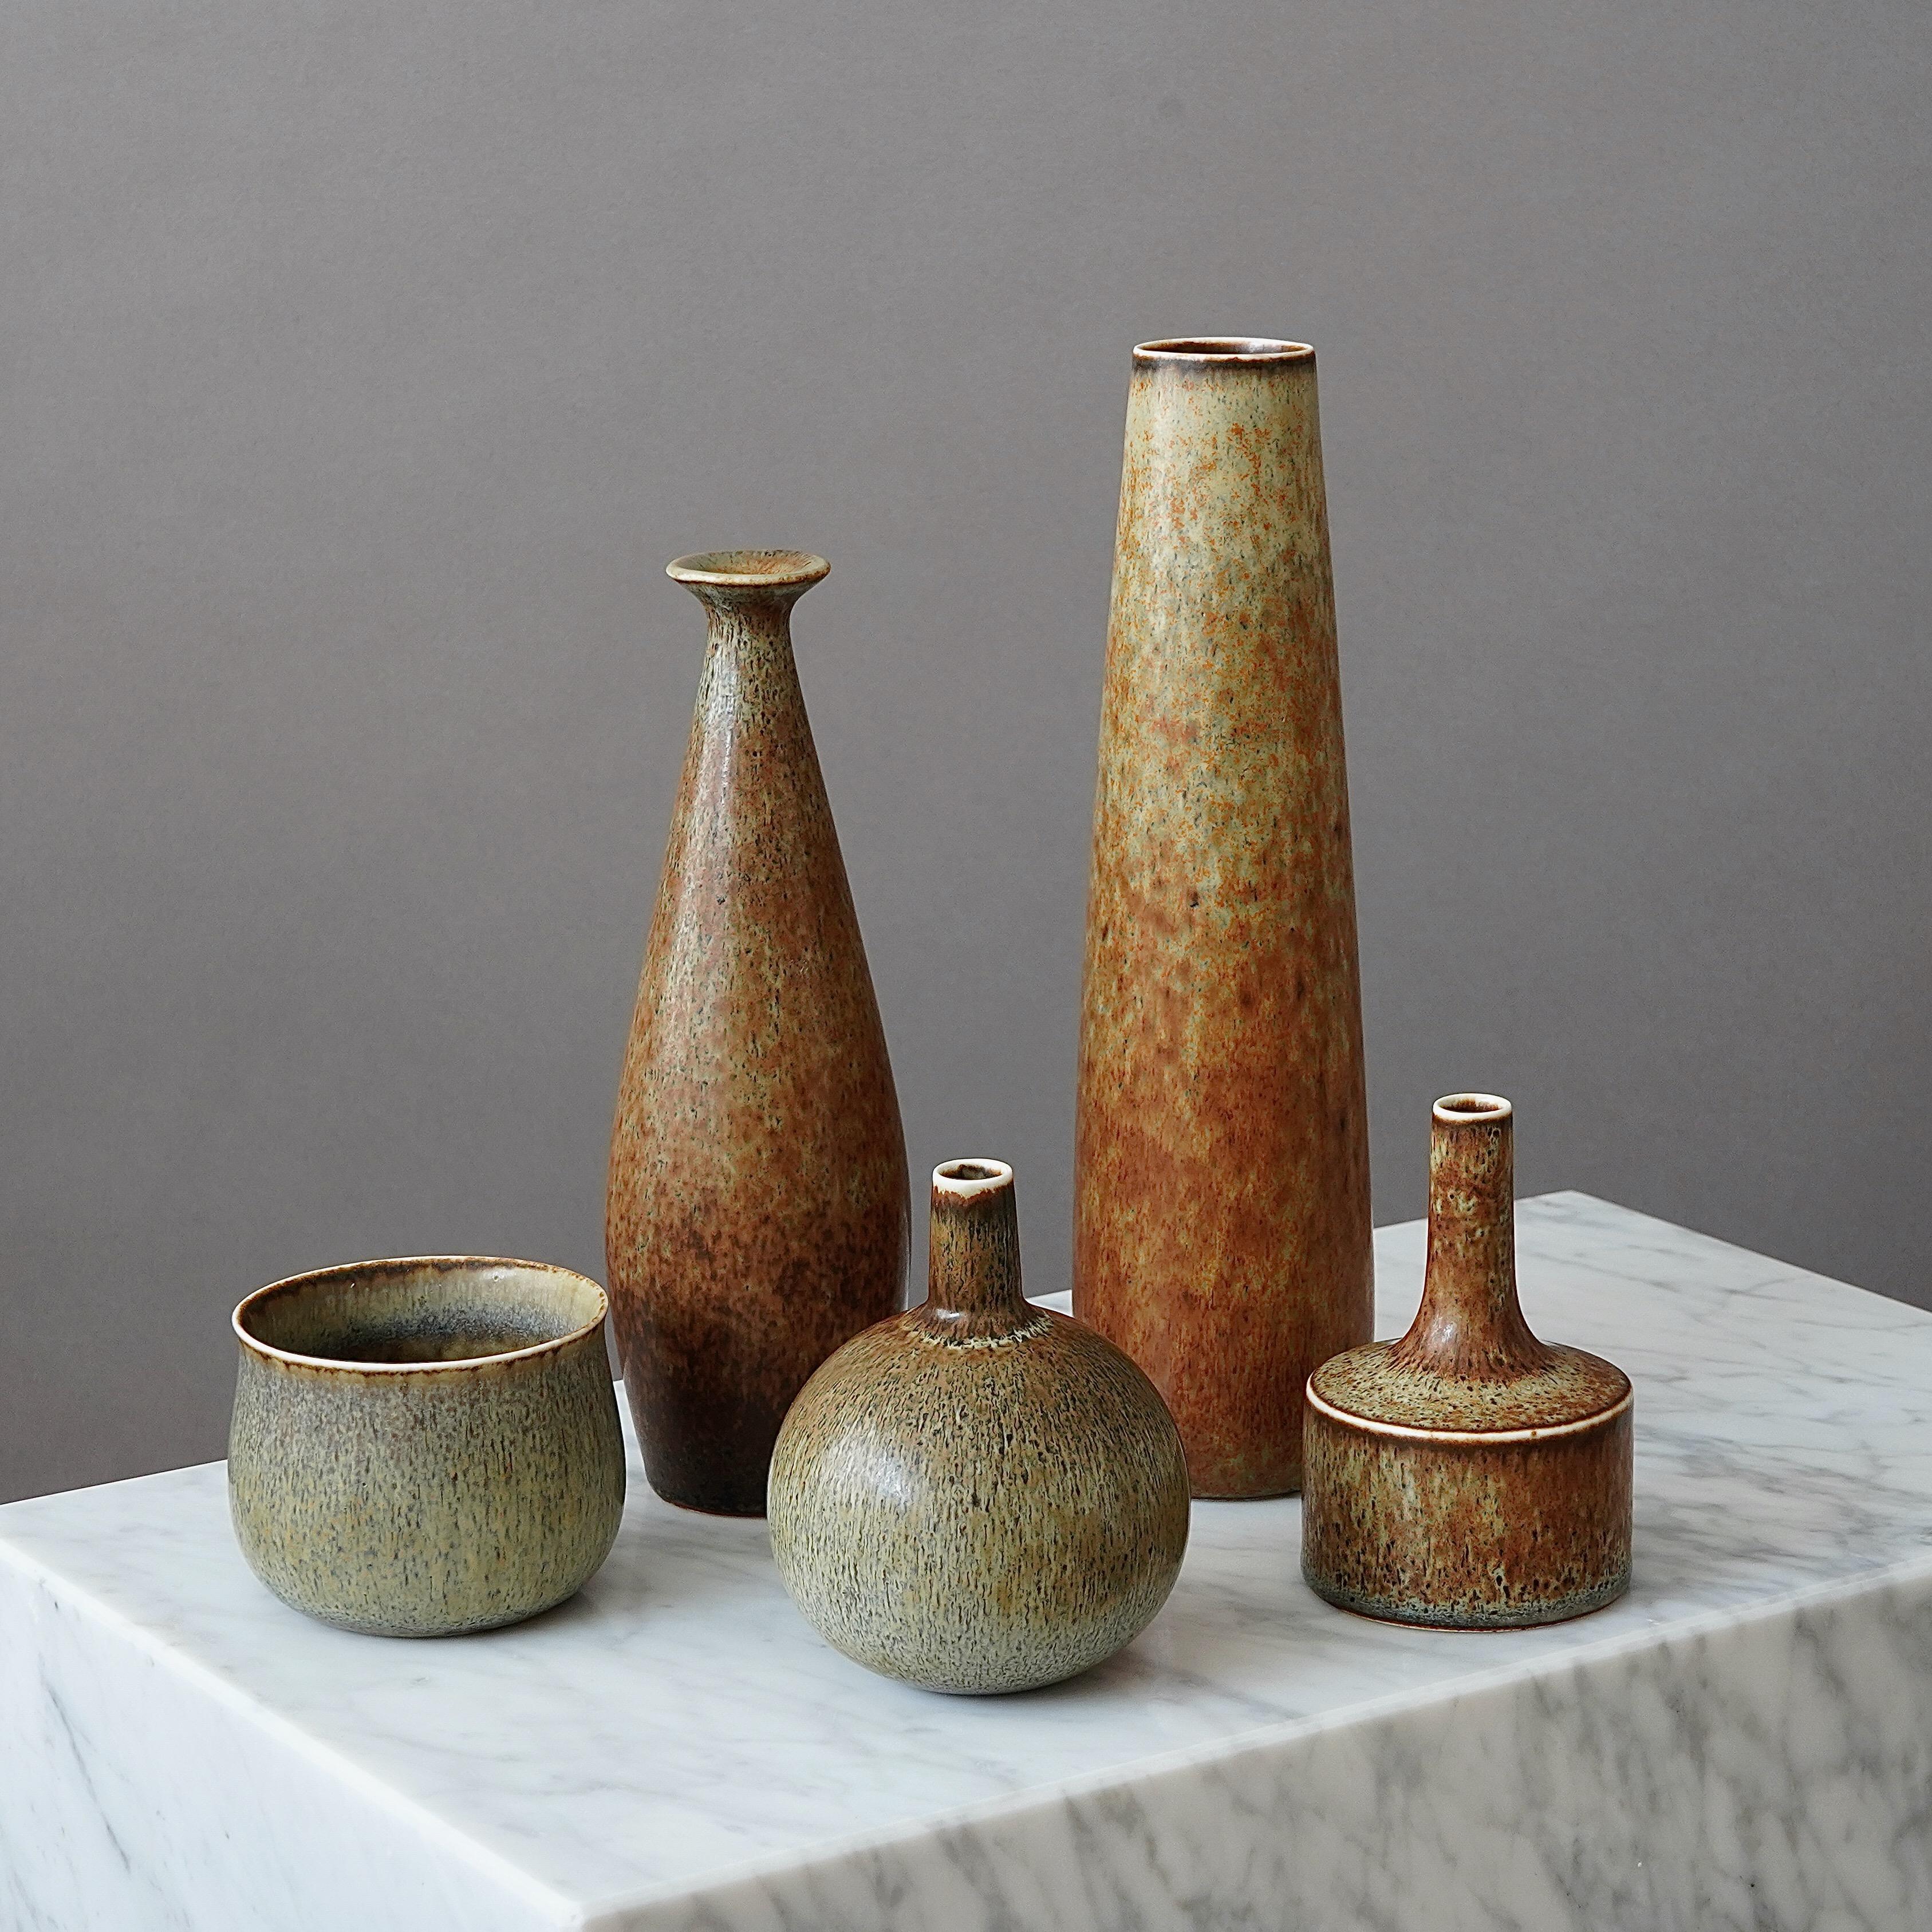 Set oder 5 schöne Vasen aus Steingut mit erstaunlicher Glasur.
Entworfen von Carl-Harry Stålhane in Rörstrand, Schweden, 1950er Jahre.

Ausgezeichneter Zustand. Signiert 